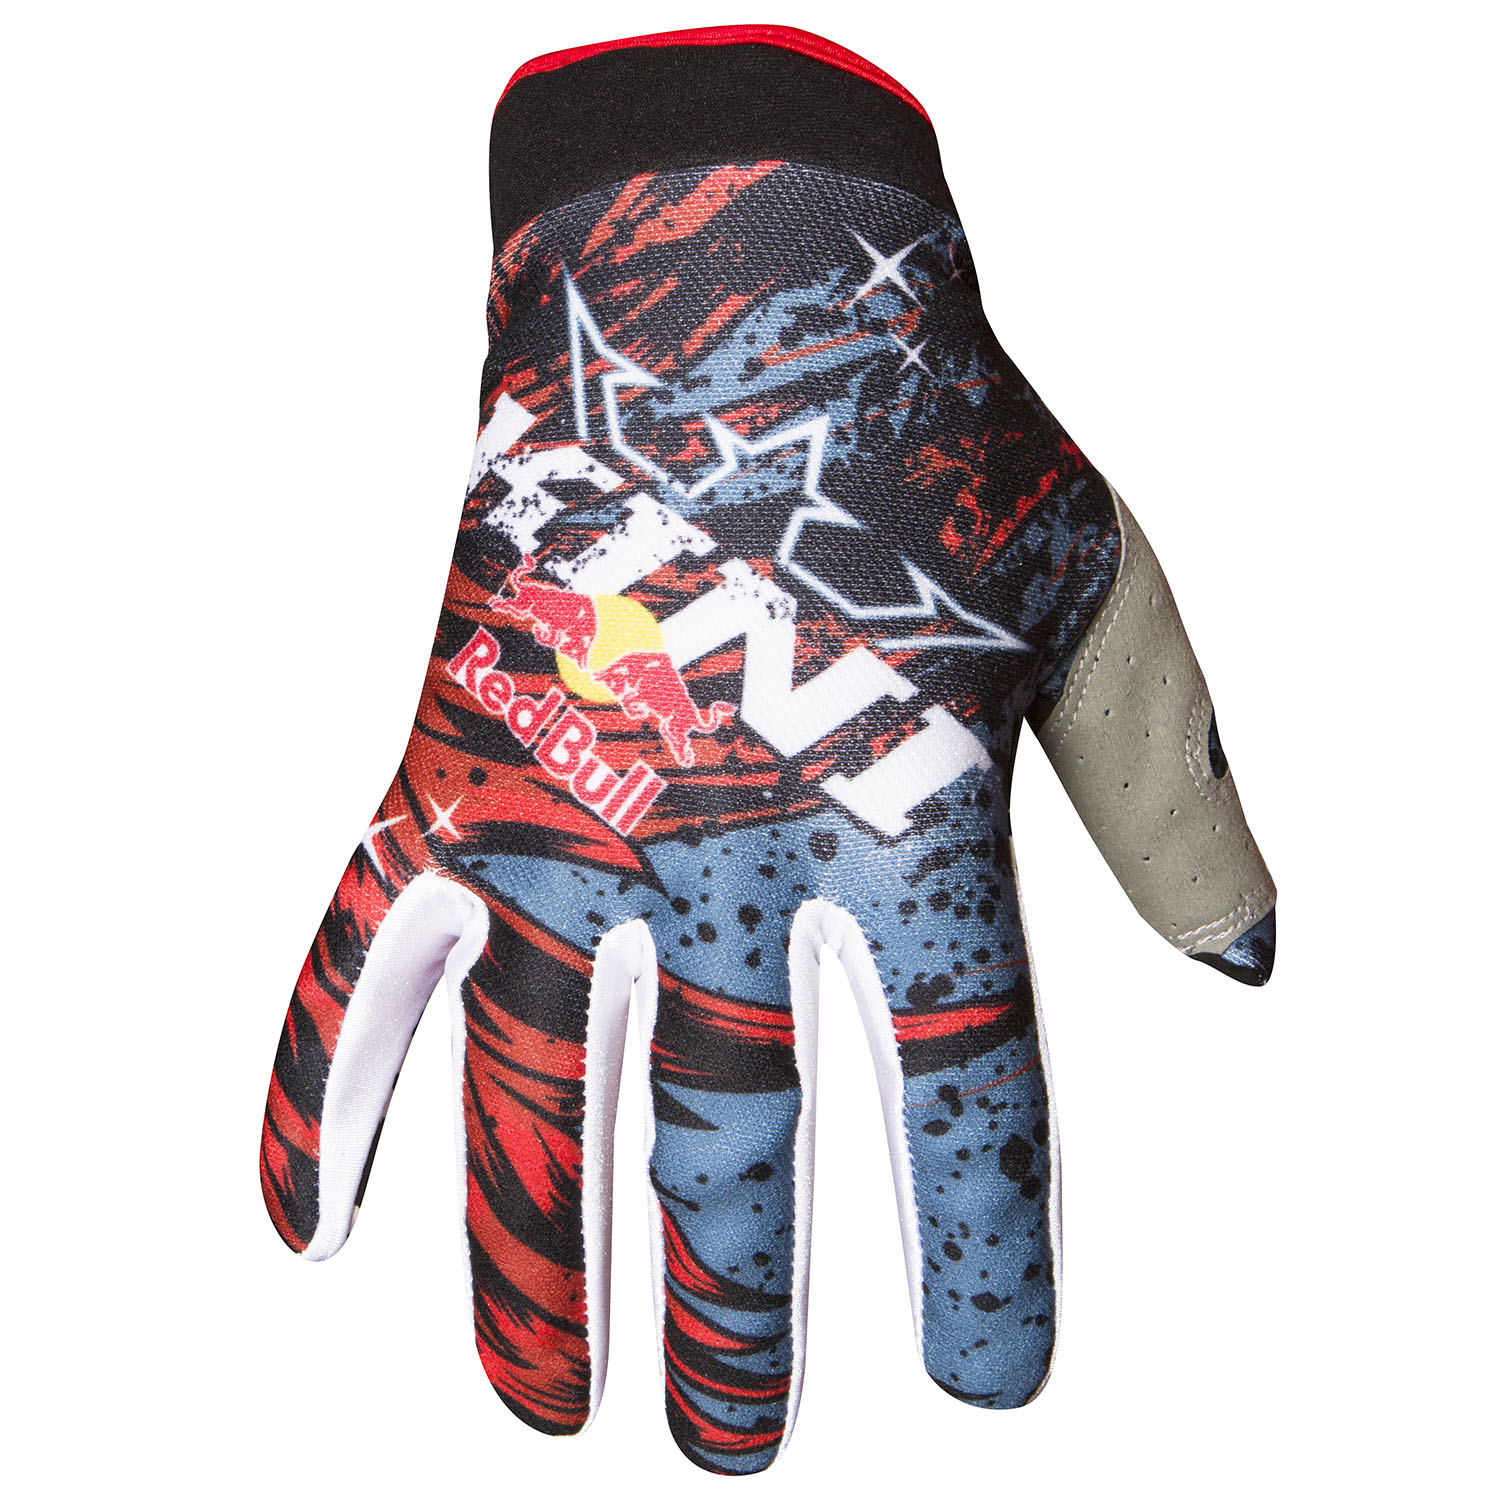 Kini Red Bull Handschuhe Revolution Rot